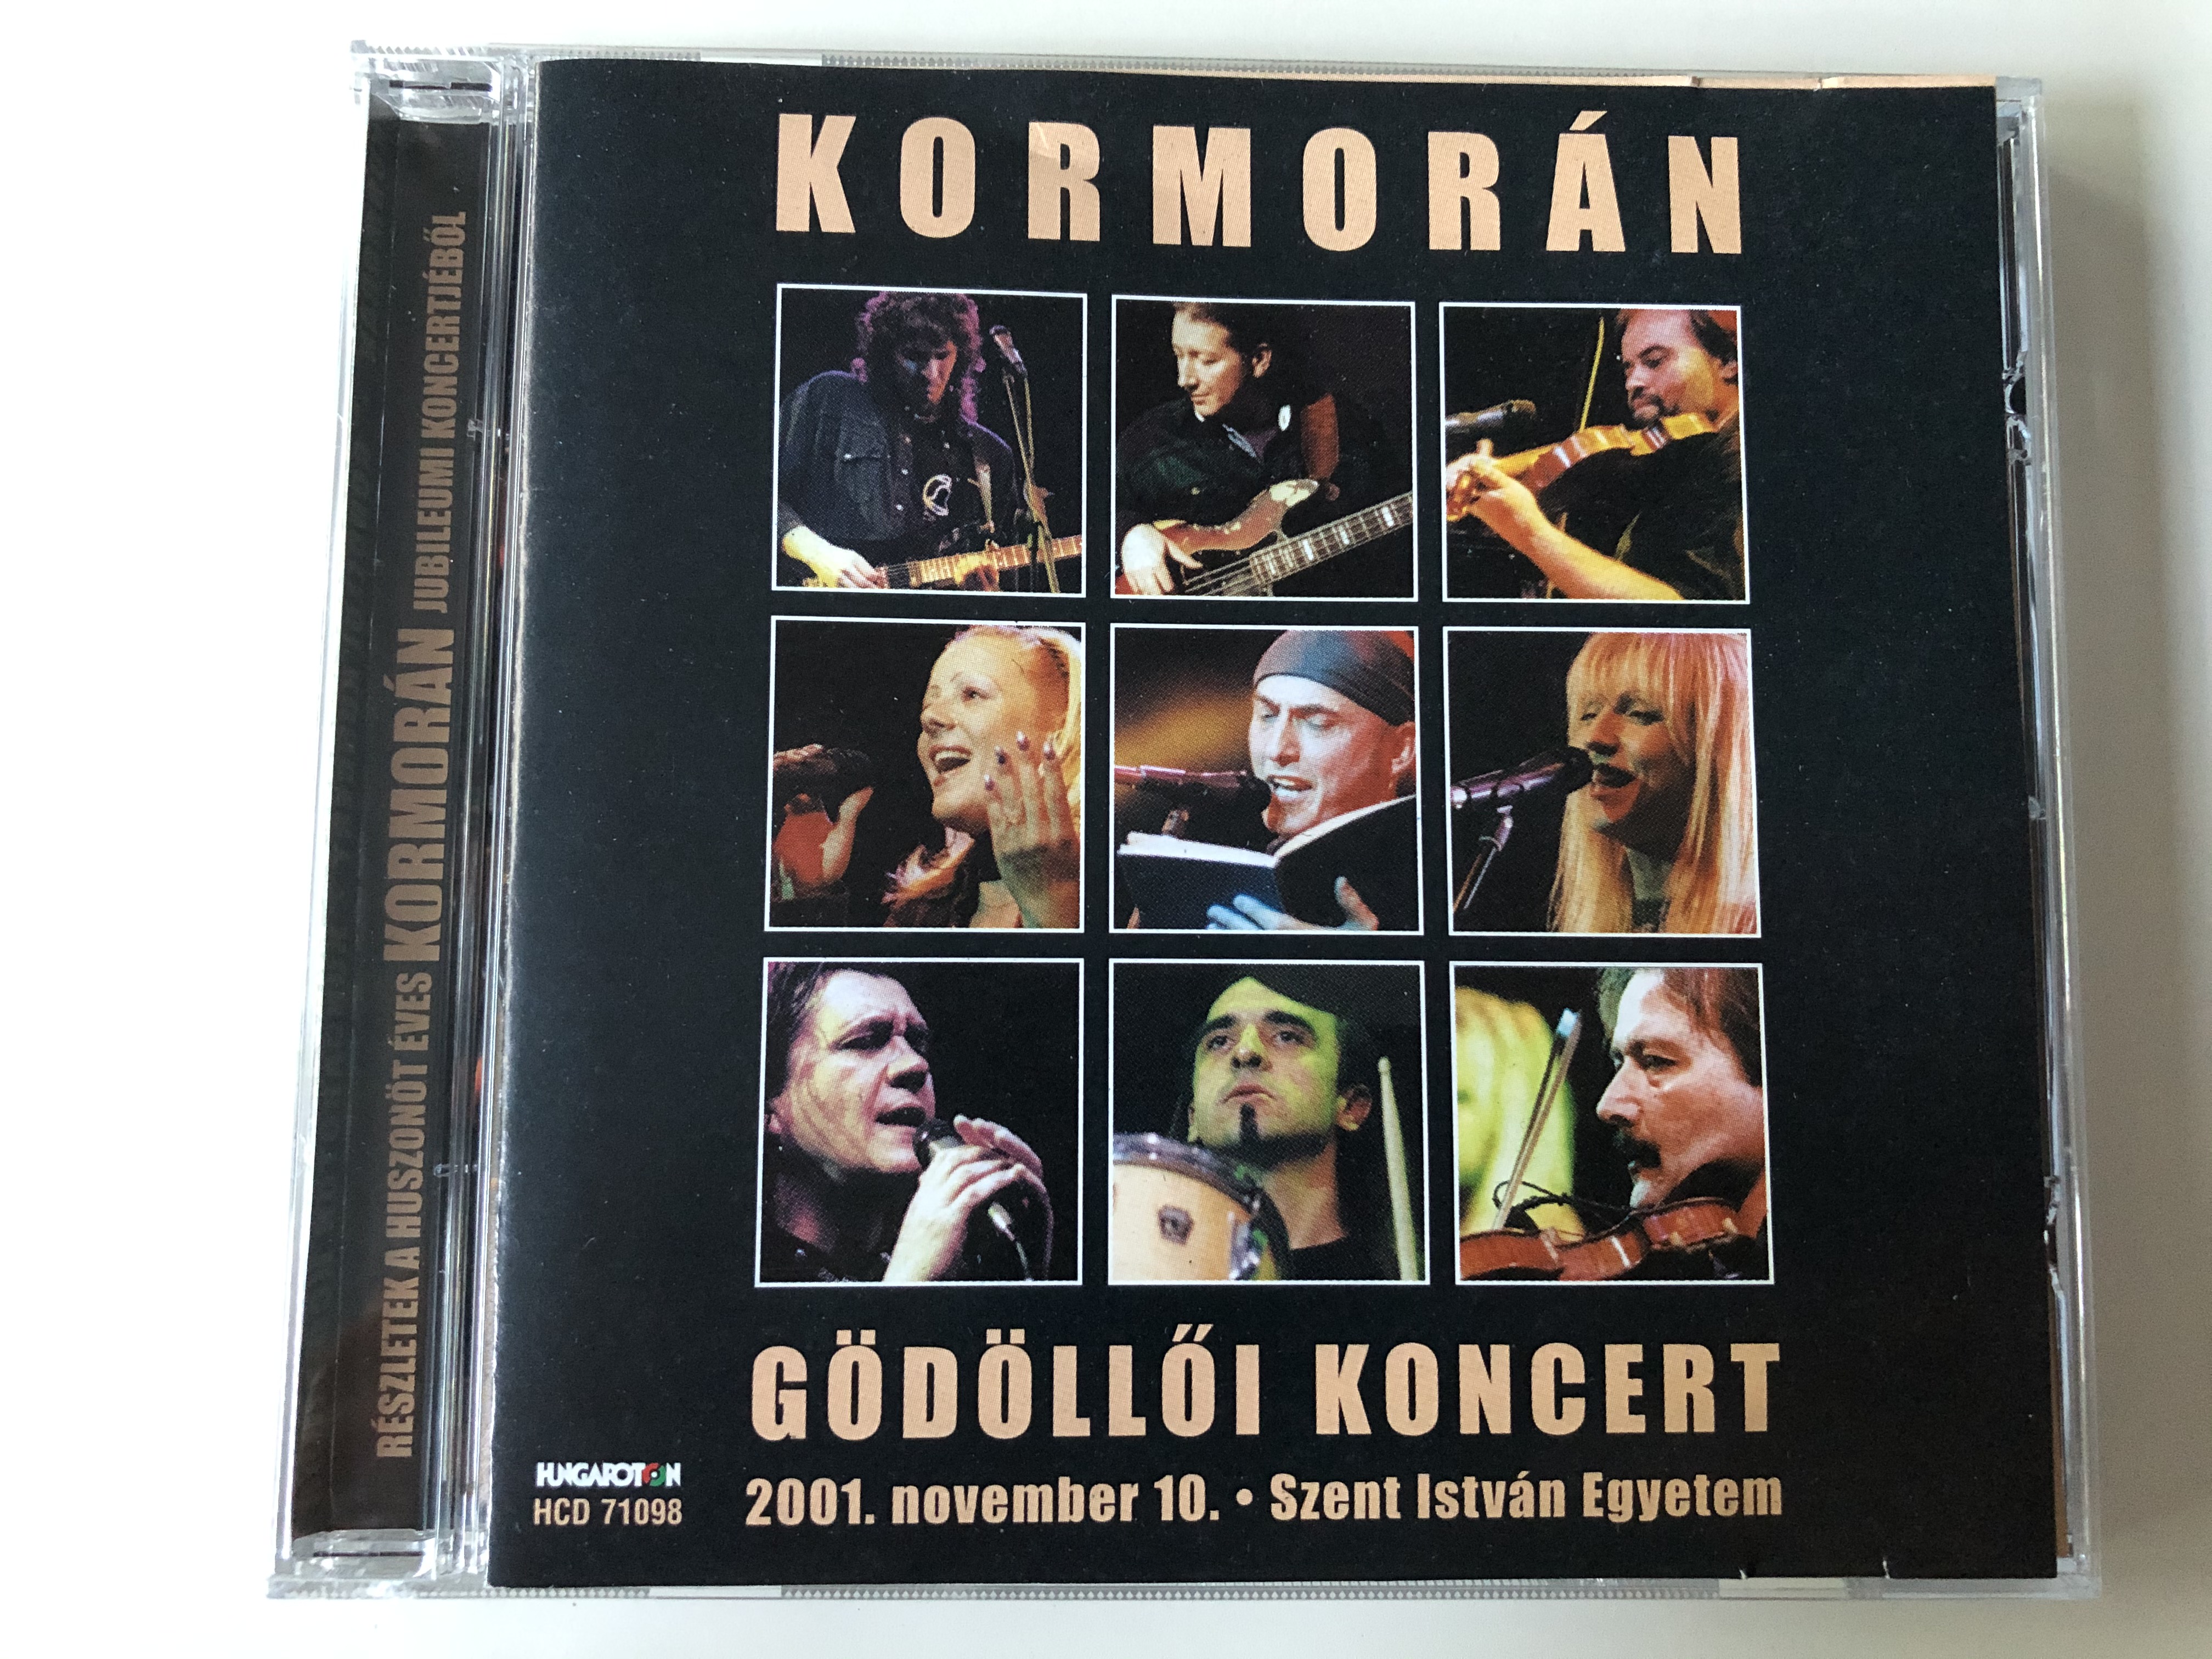 kormor-n-g-d-ll-i-koncert-2001.-november-10.-szent-istvan-egyetem-hungaroton-audio-cd-2001-hcd-71098-1-.jpg